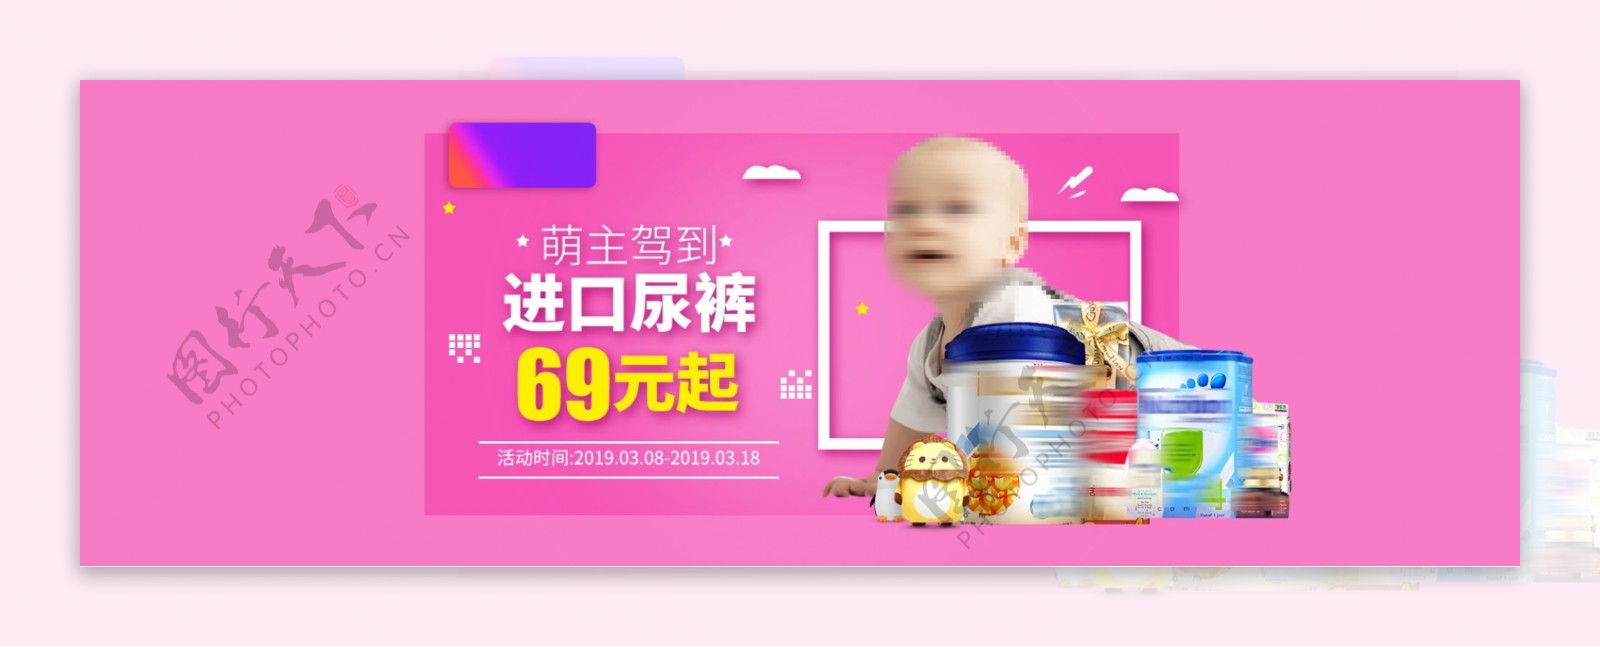 淘宝天猫母婴用品尿裤促销海报psd素材